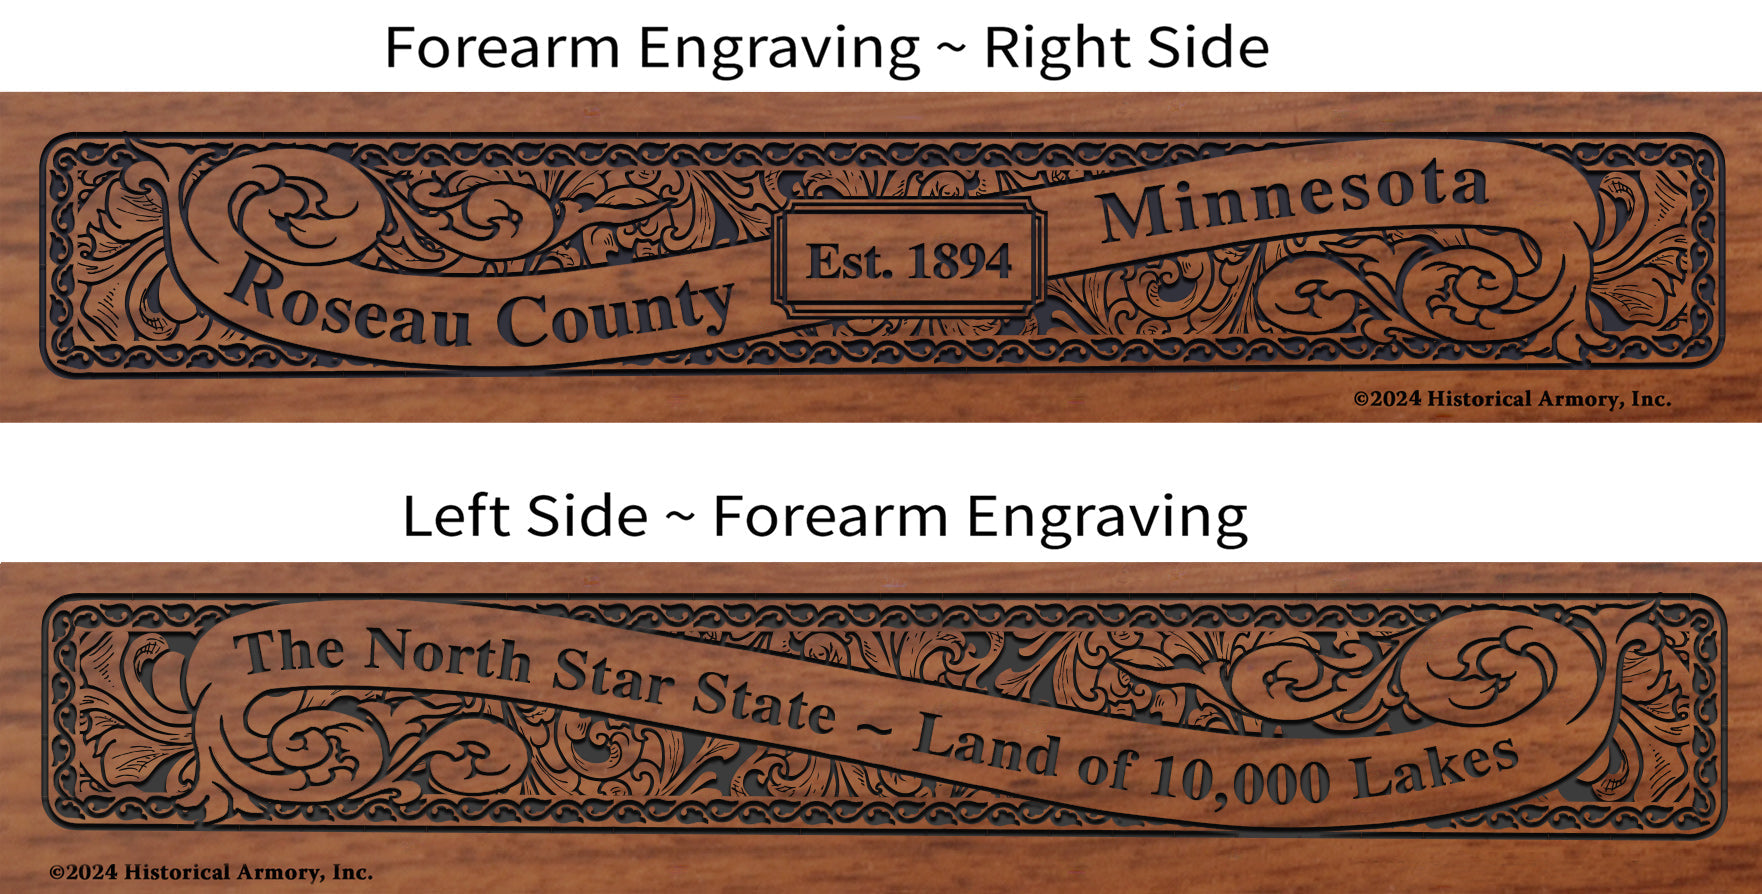 Roseau County Minnesota Engraved Rifle Forearm